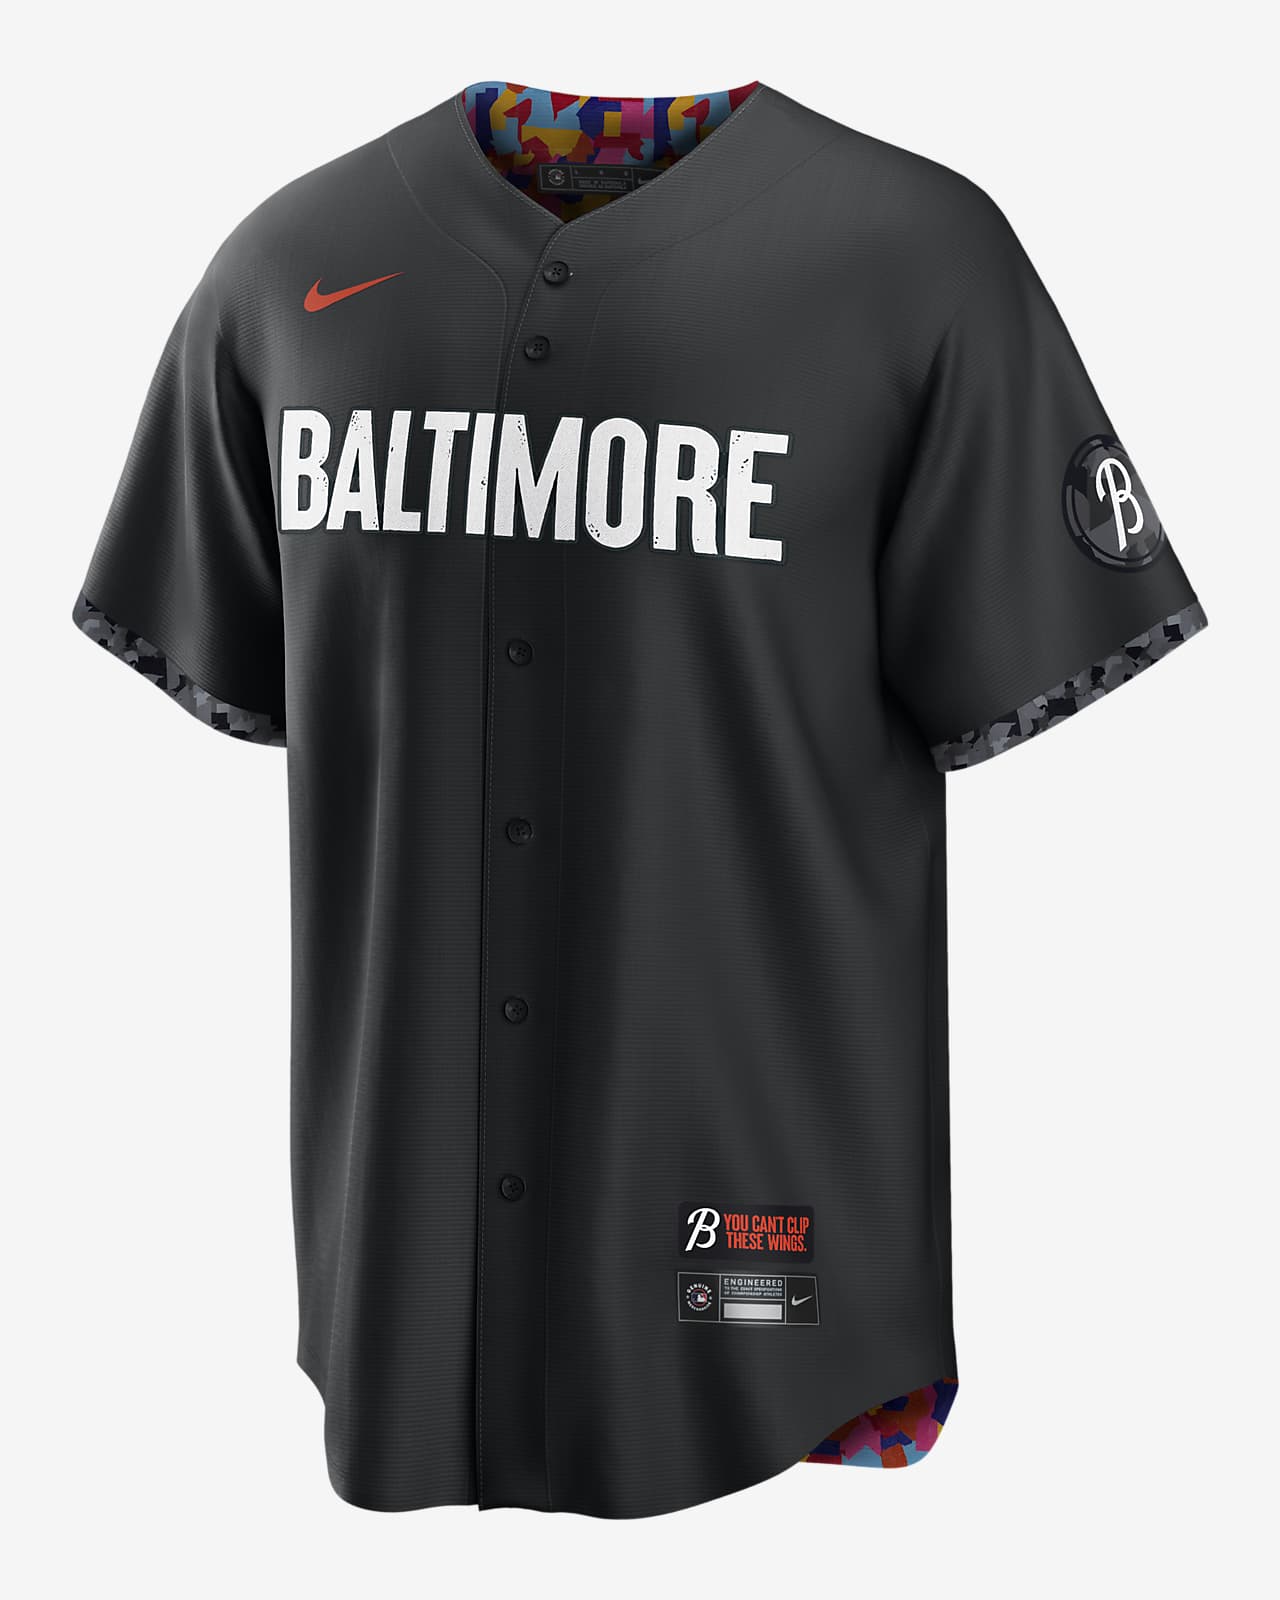 MLB Baltimore Orioles City Connect (Cal Ripken) Men's Replica Baseball Jersey